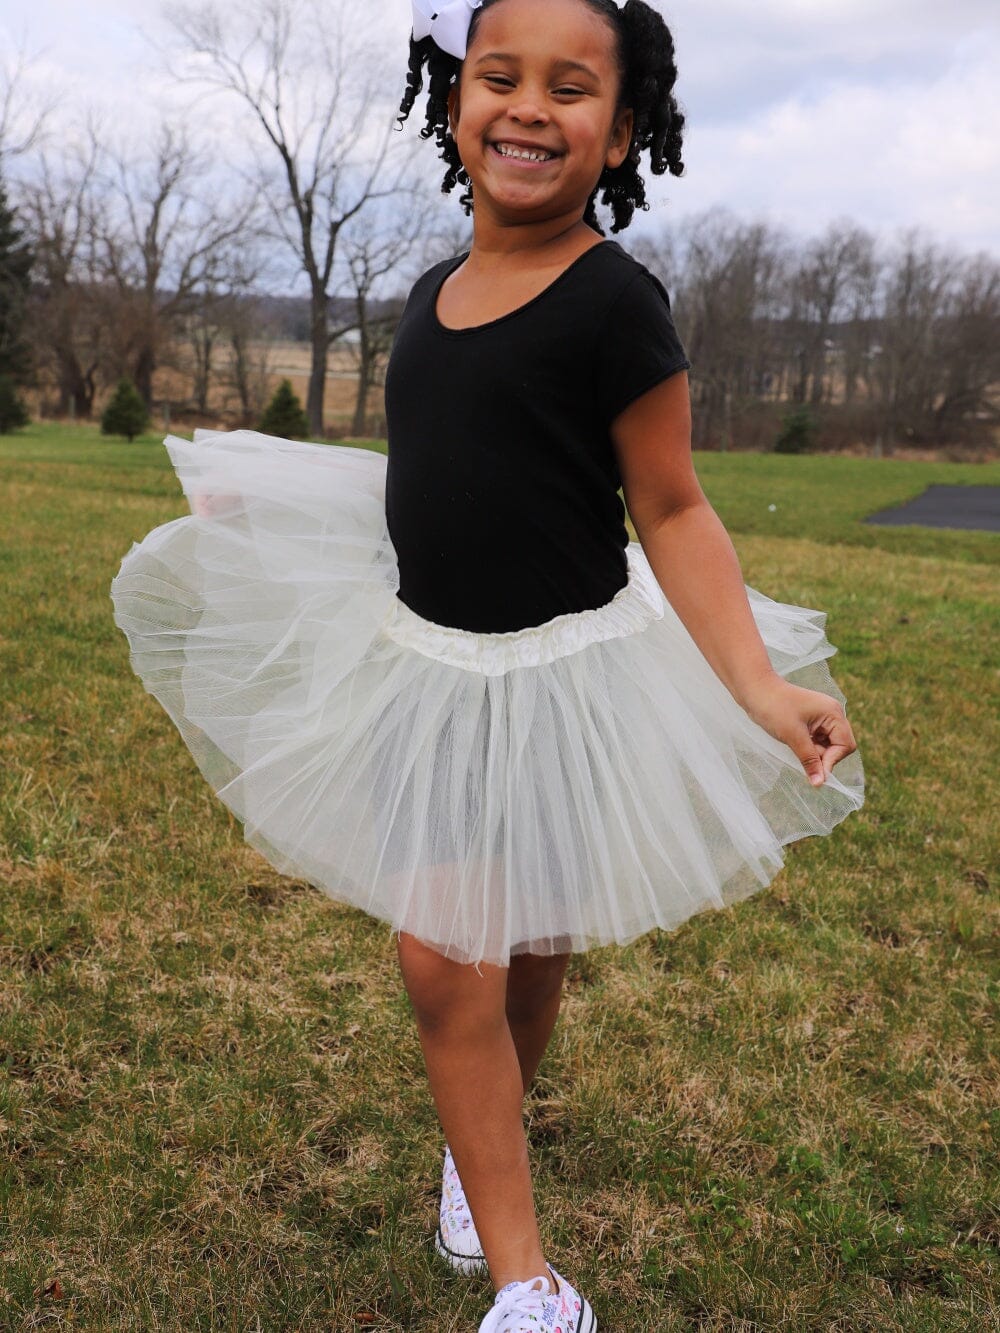 Ivory Tutu Skirt - Kids Size 3-Layer Tulle Basic Ballet Dance Costume Tutus for Girls - Sydney So Sweet